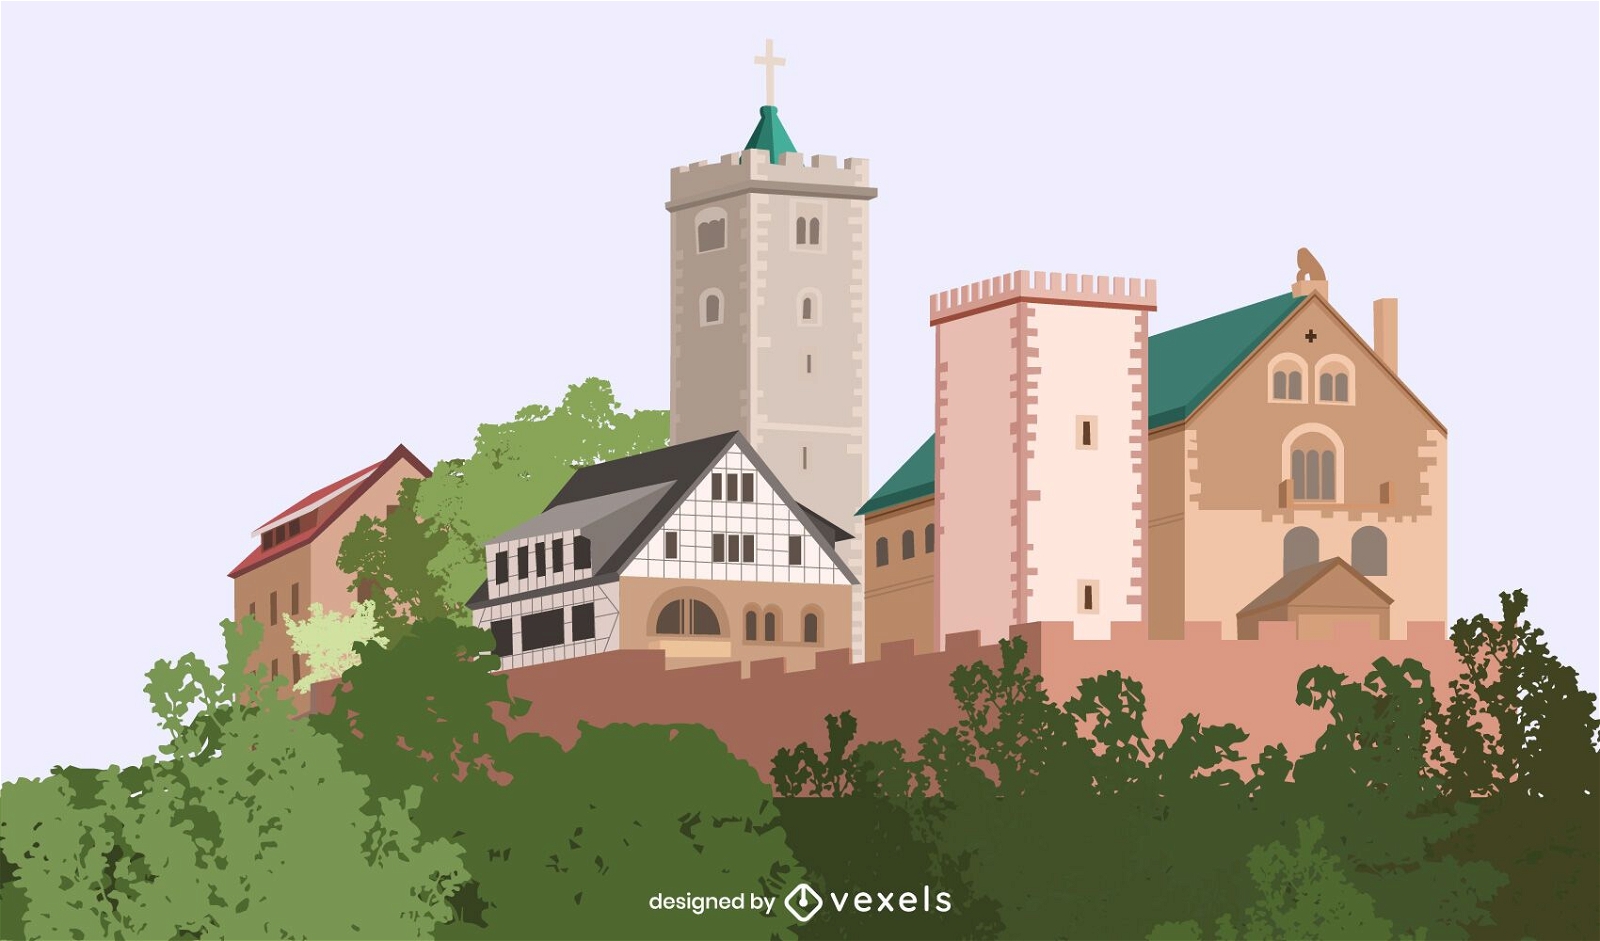 Ilustraci?n del castillo de Wartburg